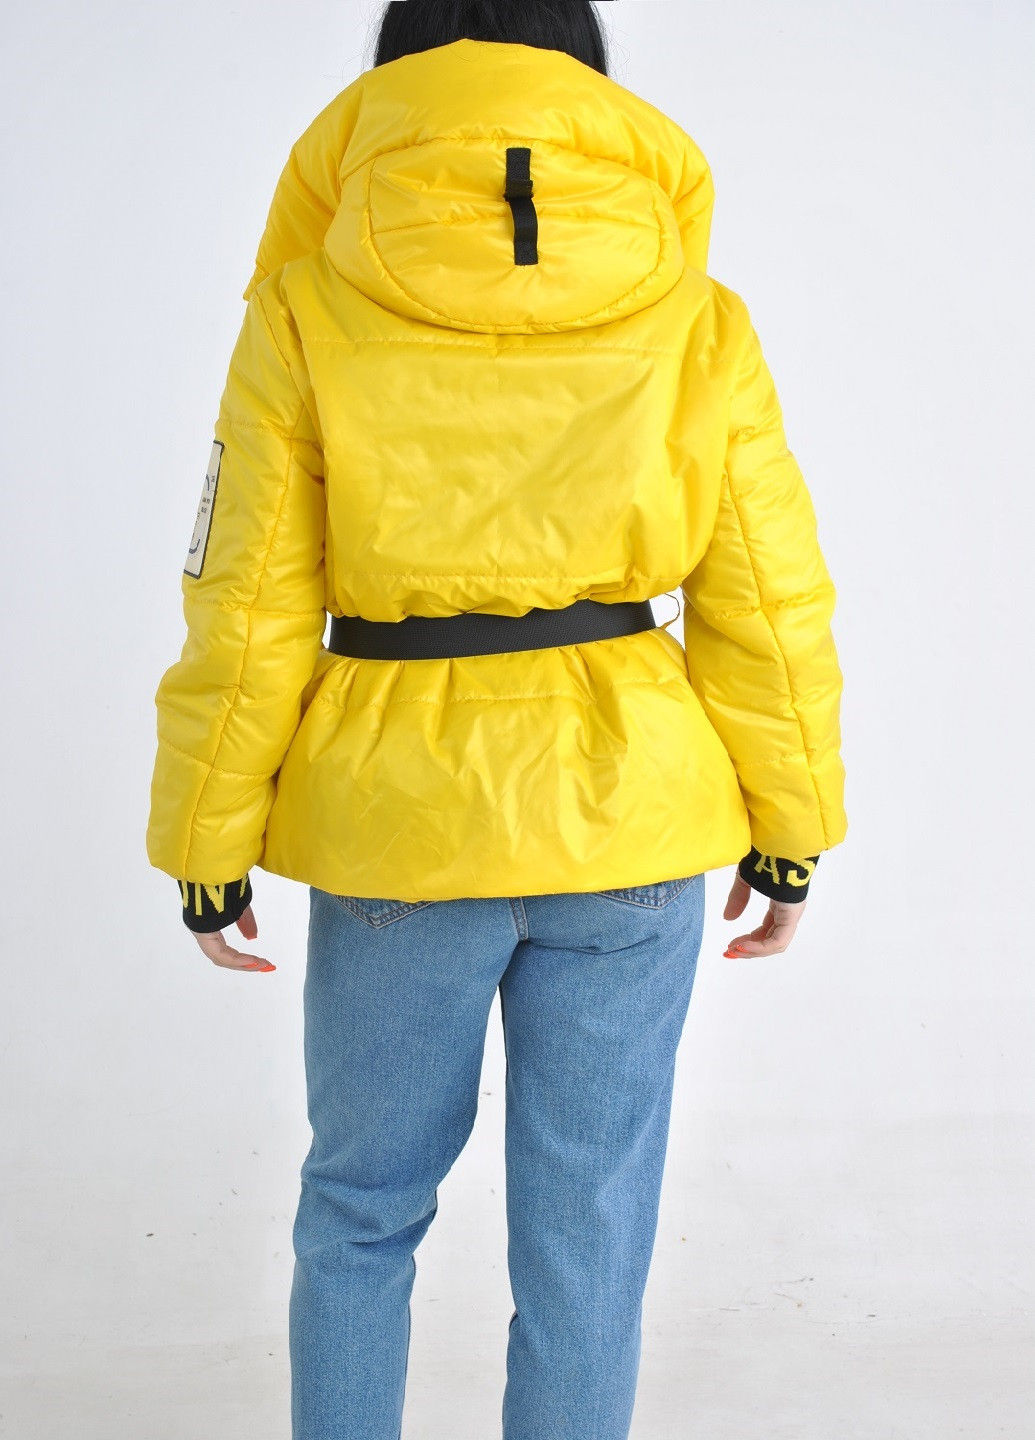 Жовта демісезонна куртка Fashion Club